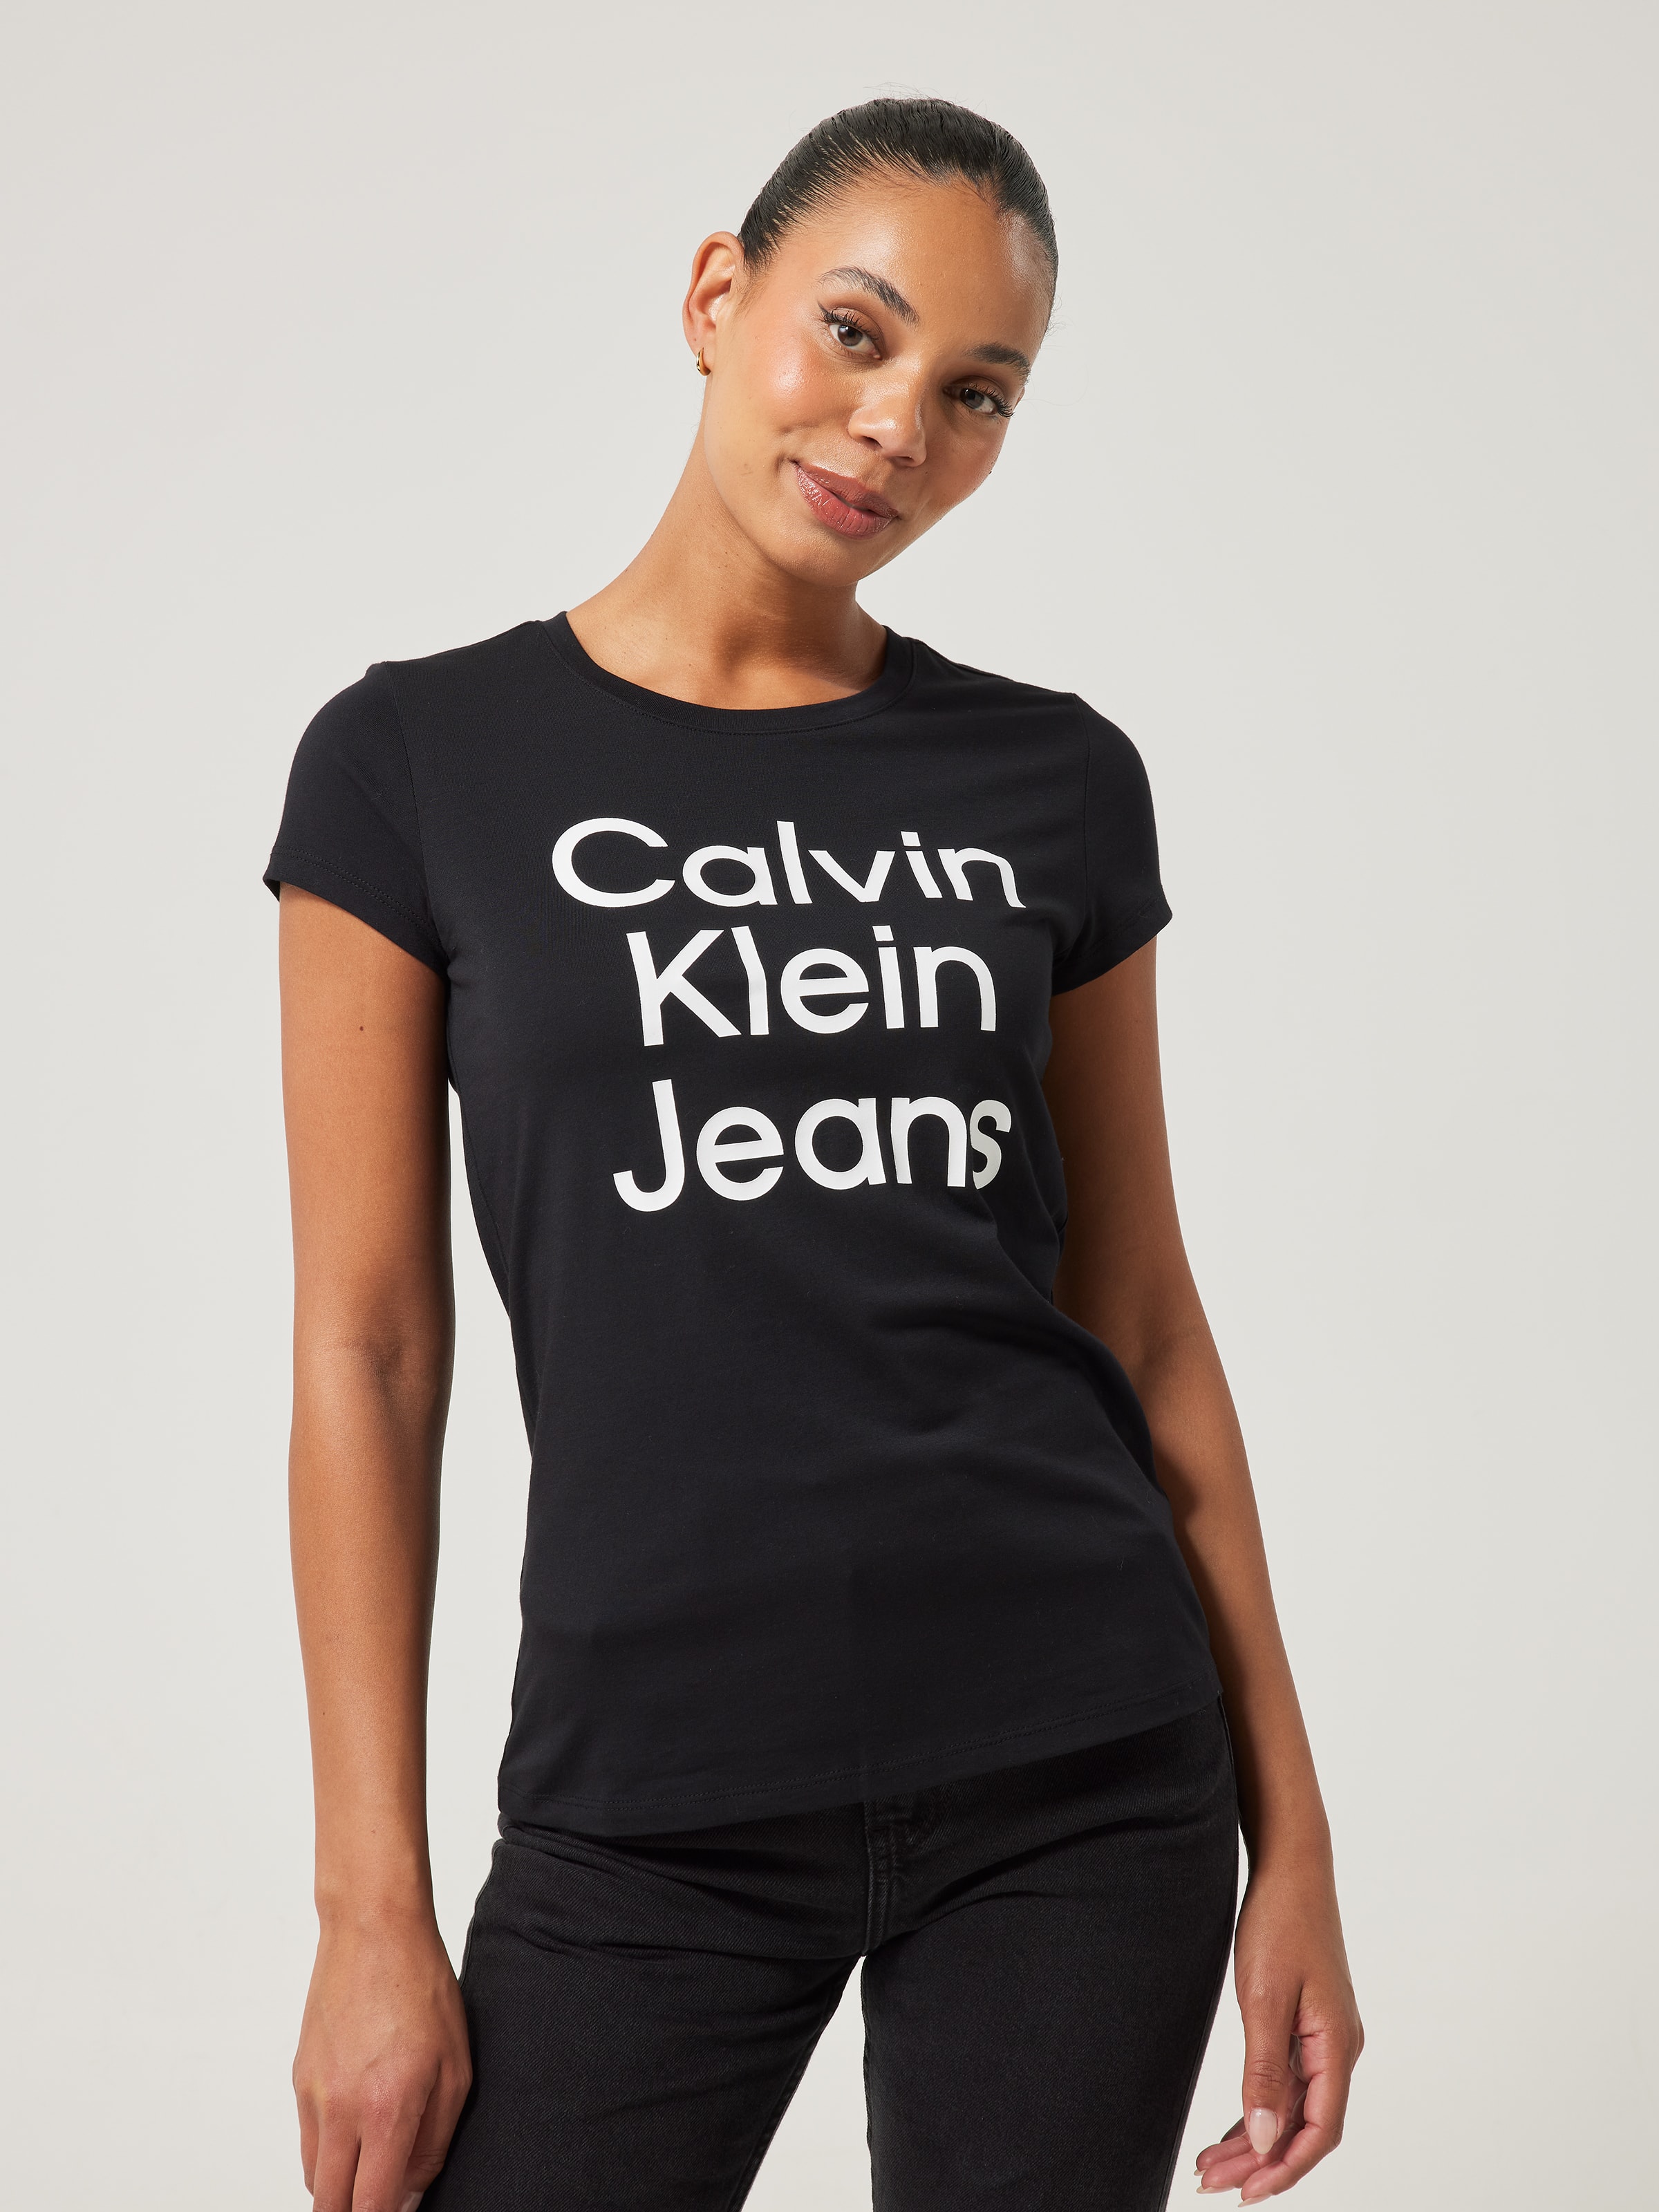 Women's Calvin Klein Products